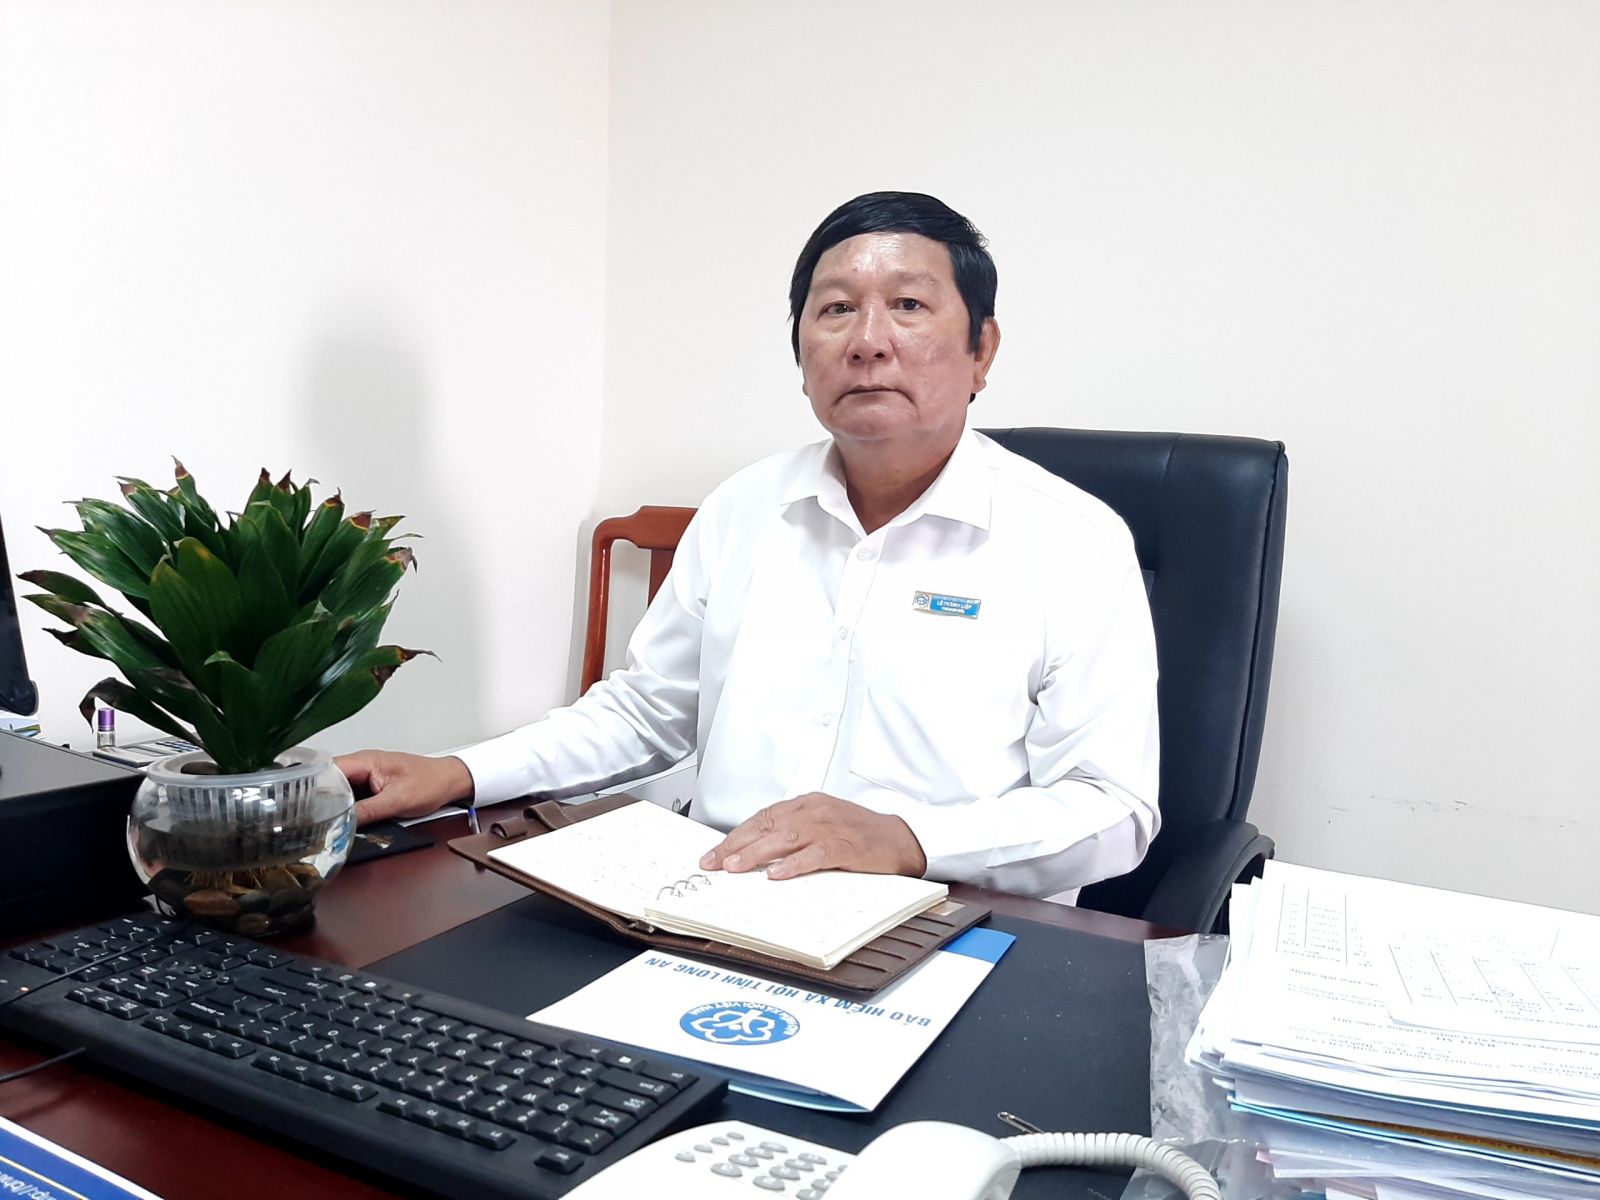 Phó Giám đốc BHXH tỉnh – Lê Thành Liếp